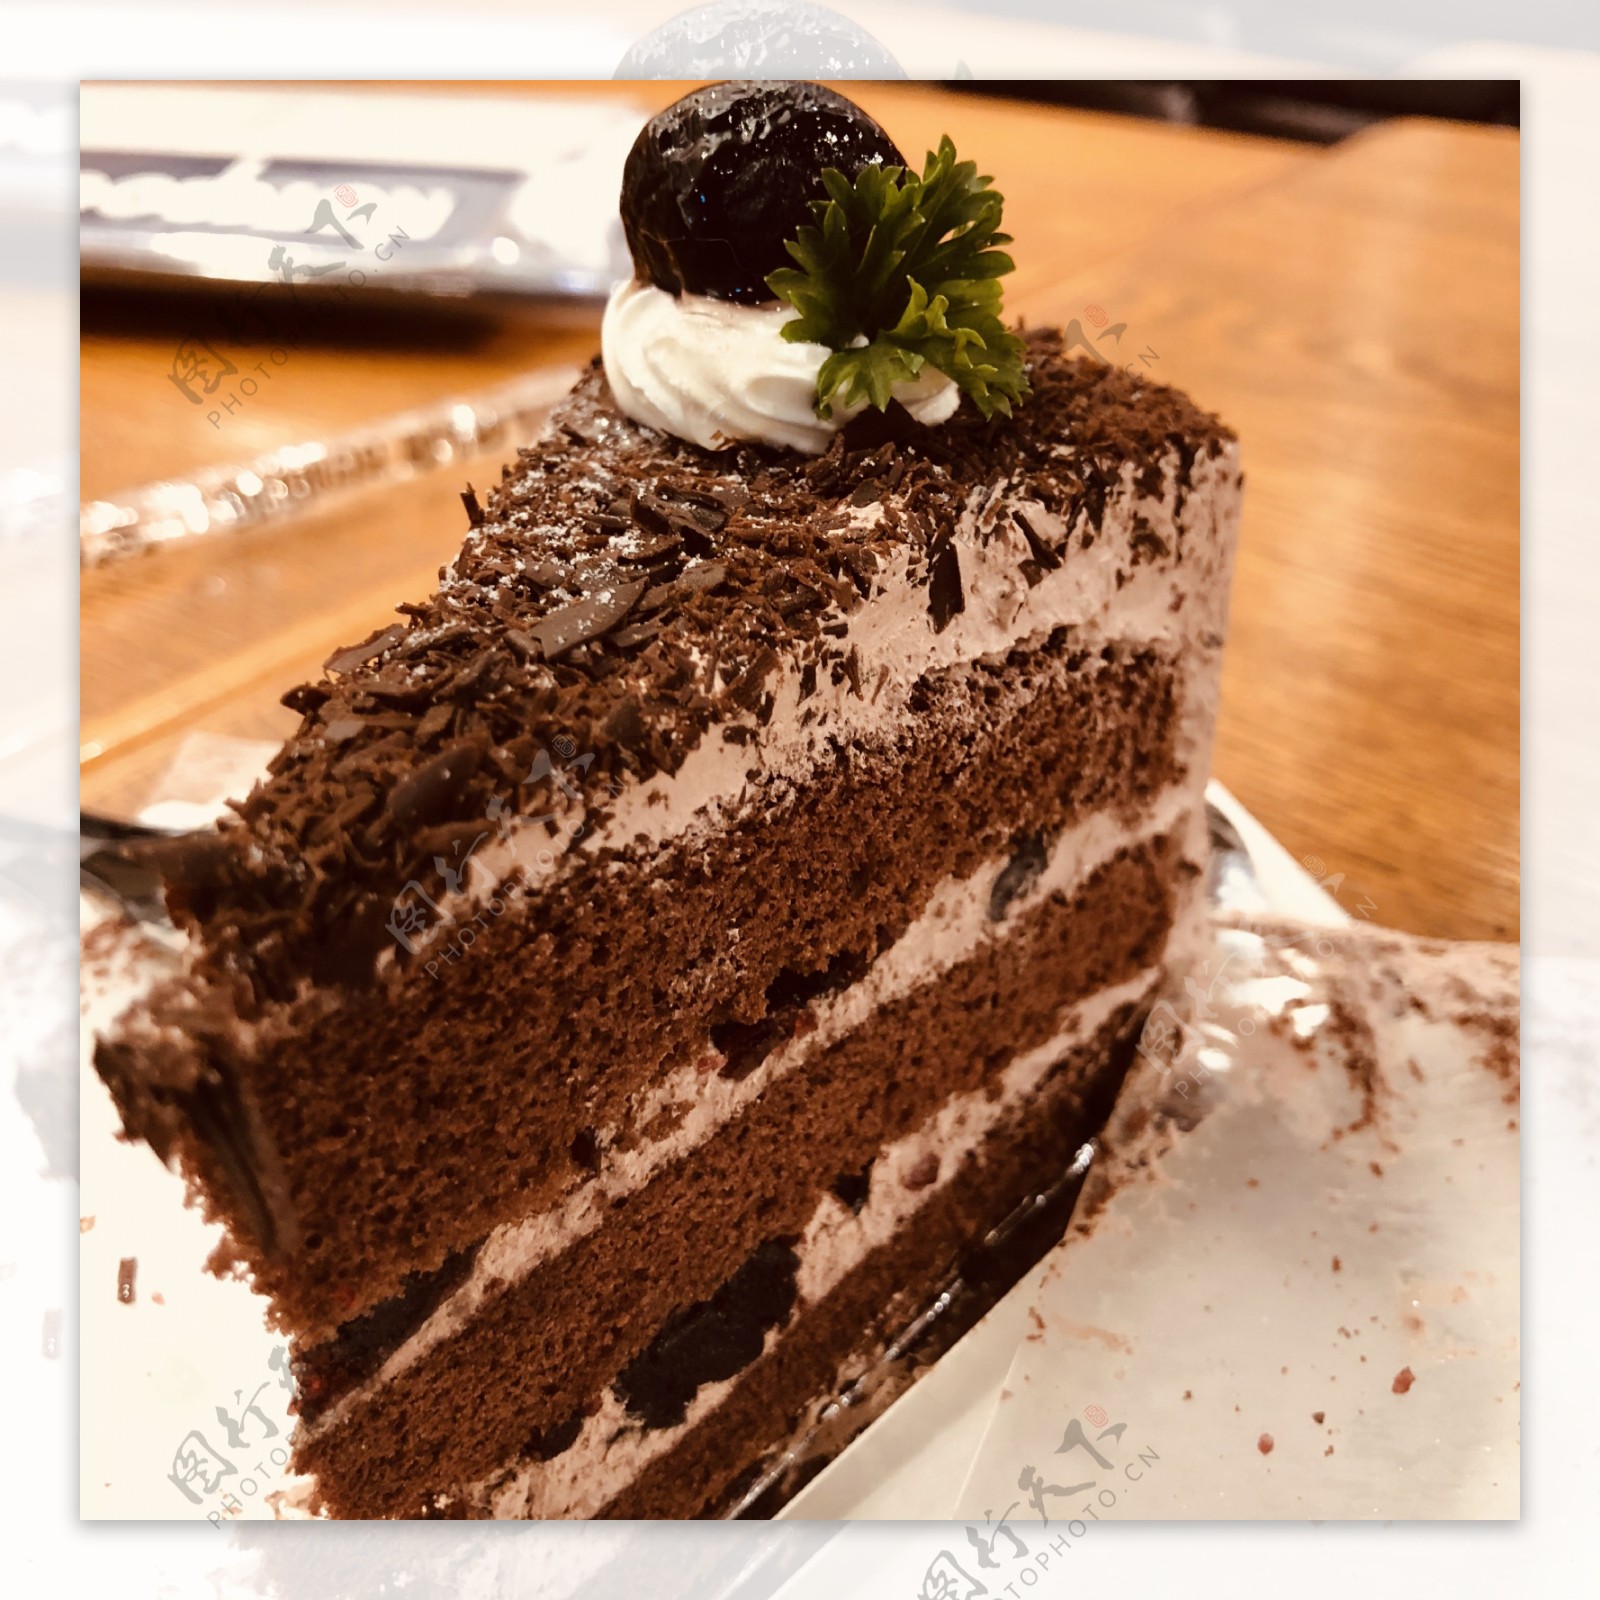 原来名气很大的蛋糕做起来却很简单------黑森林蛋糕_黑森林蛋糕_sunshinewinnie的日志_美食天下